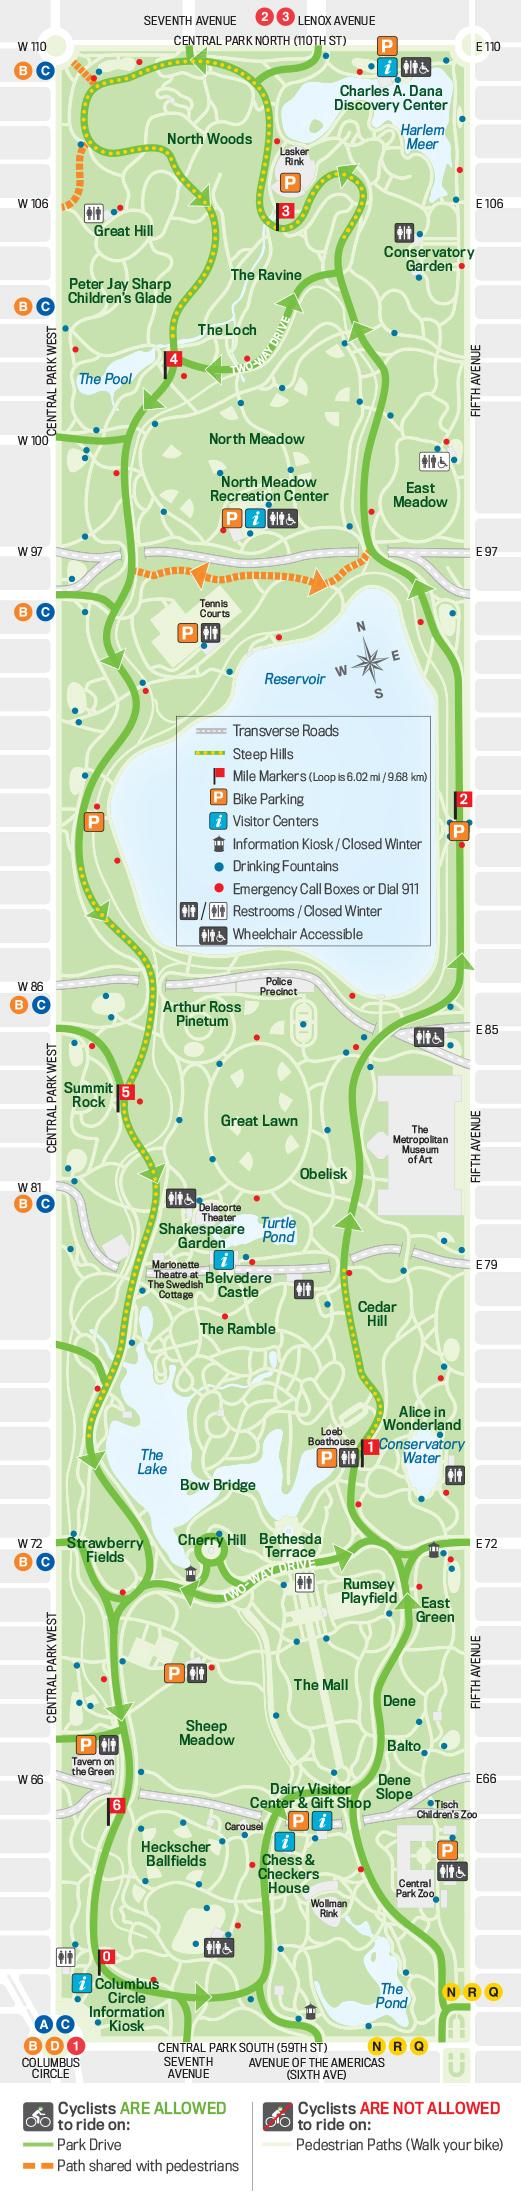 Central park cykel karta - Cykel karta över central park (New York - USA)